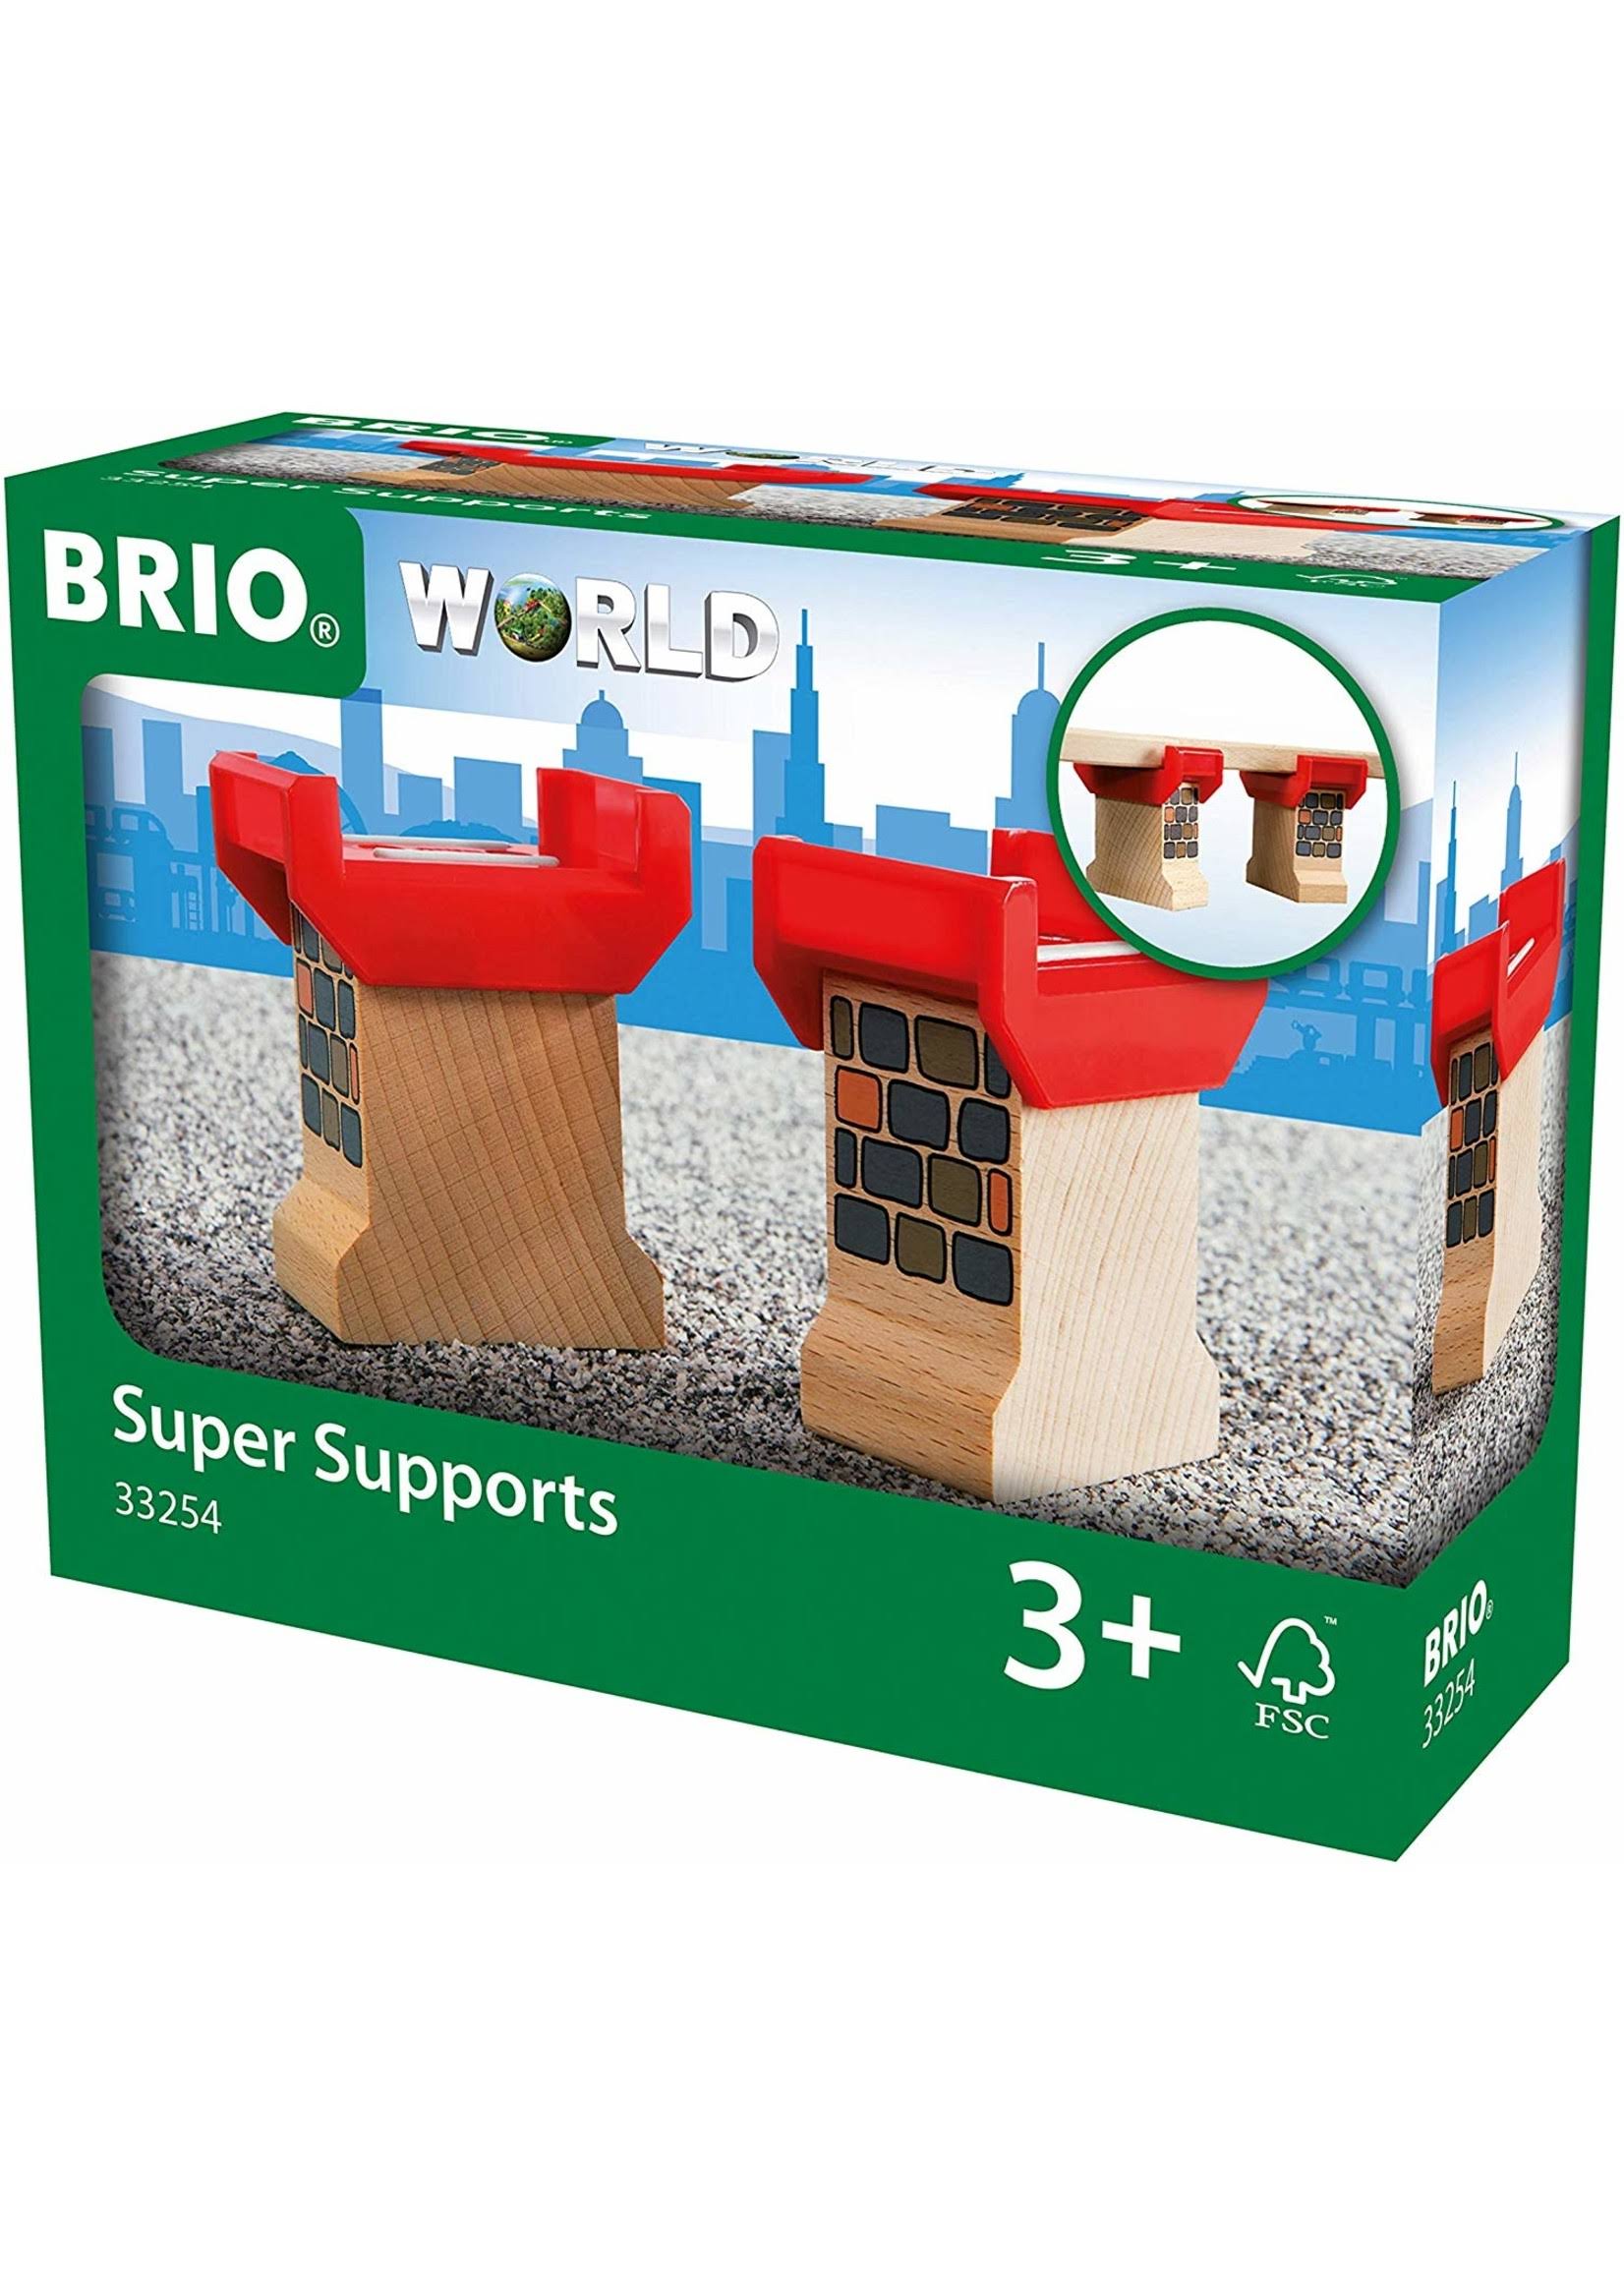 Brio Super Supports Toy - 33254 Railway